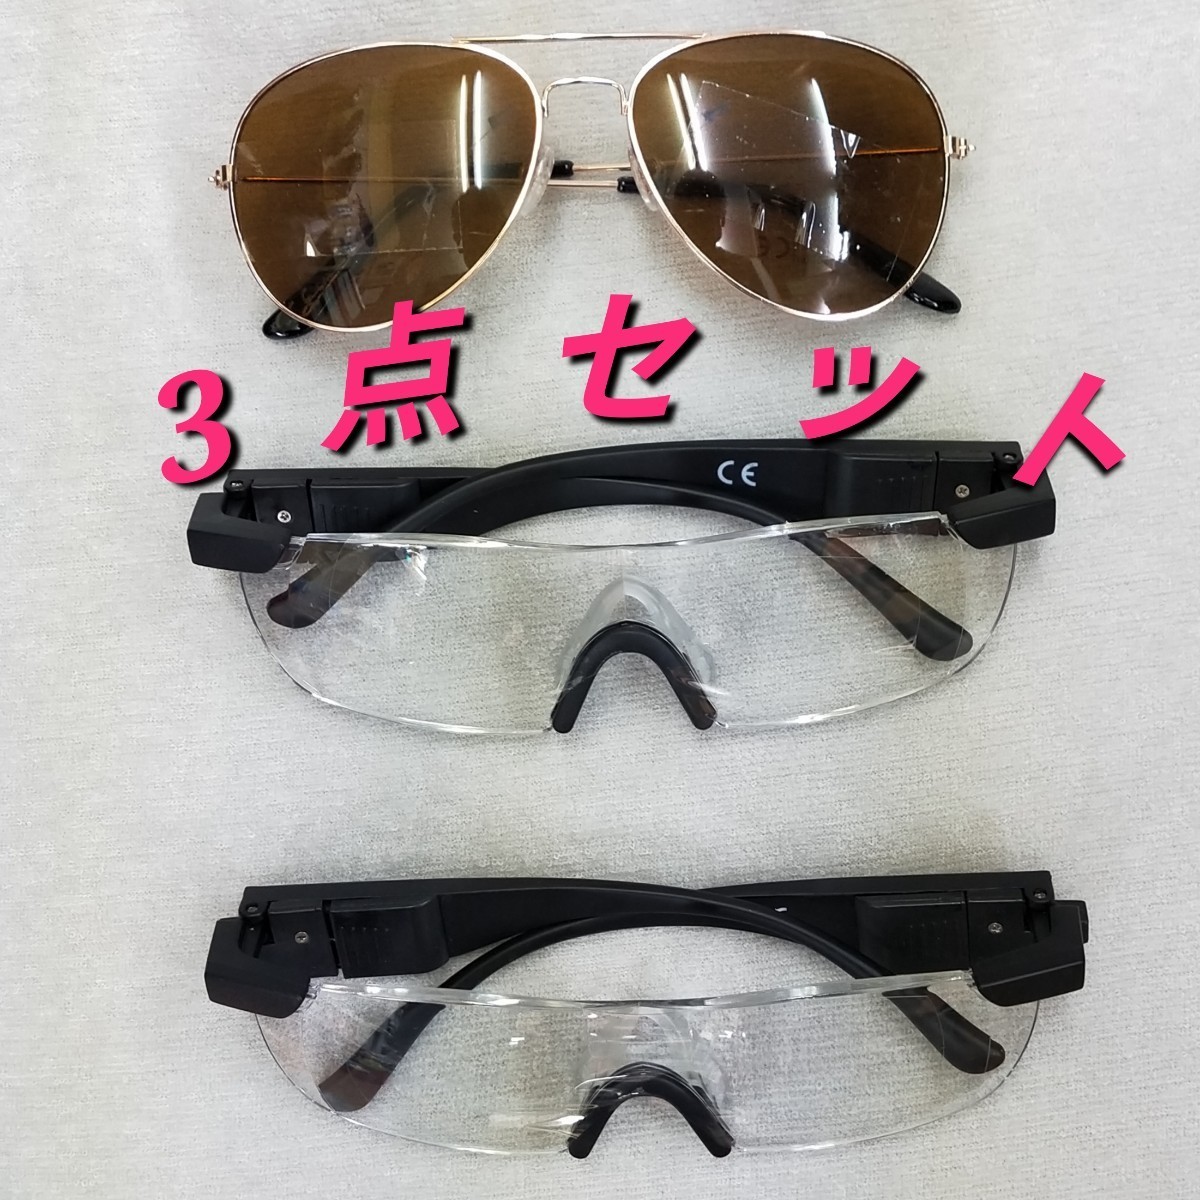 [日本直販]　:　新品パワーズームマックス　LEDライト付き拡大鏡メガネ　約1.6倍　×2個